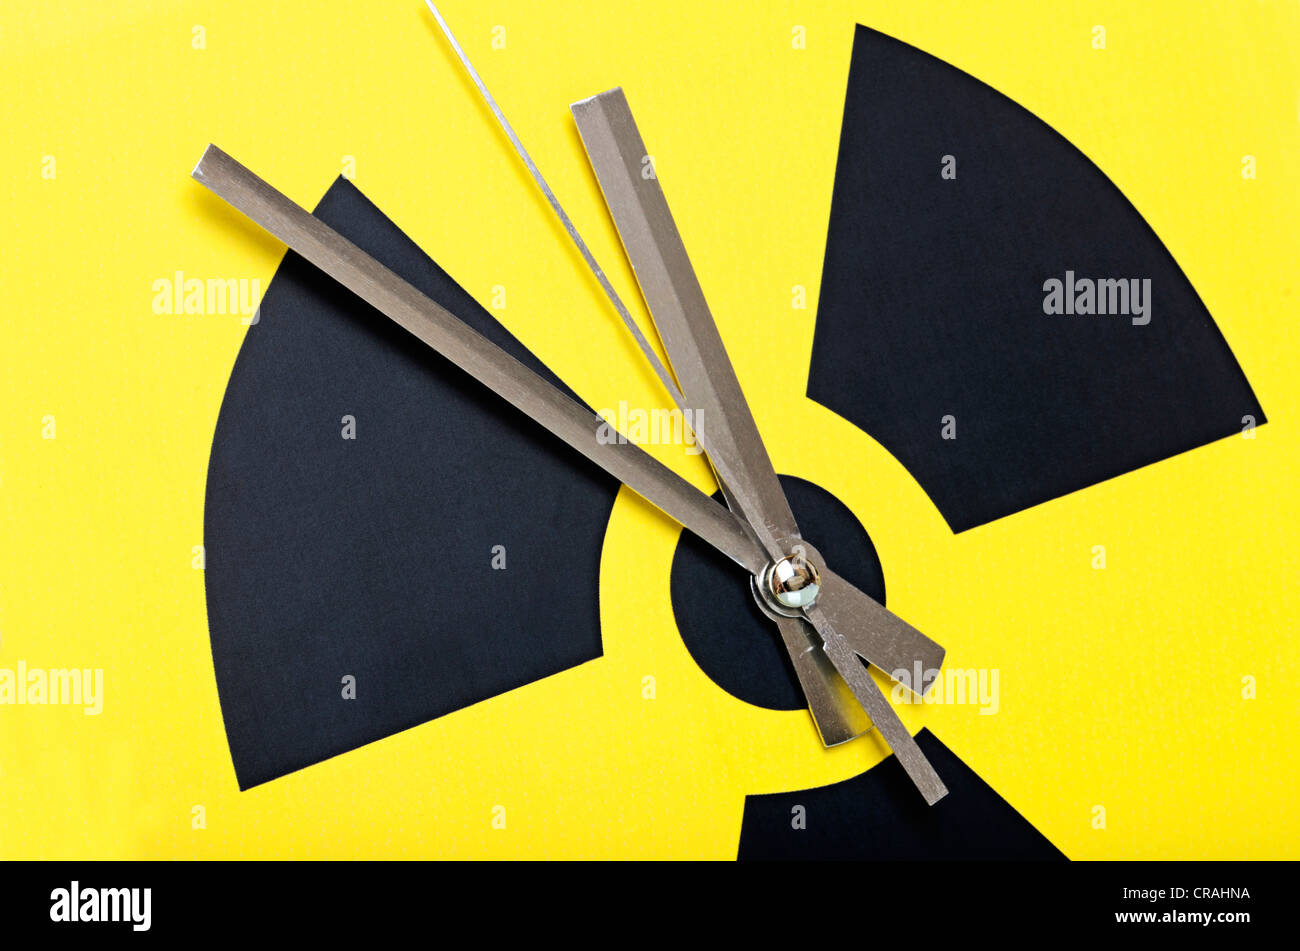 Symbole atomique avec des aiguilles d'horloge fixée à 11:55, image symbolique pour l'élimination de l'énergie nucléaire Banque D'Images